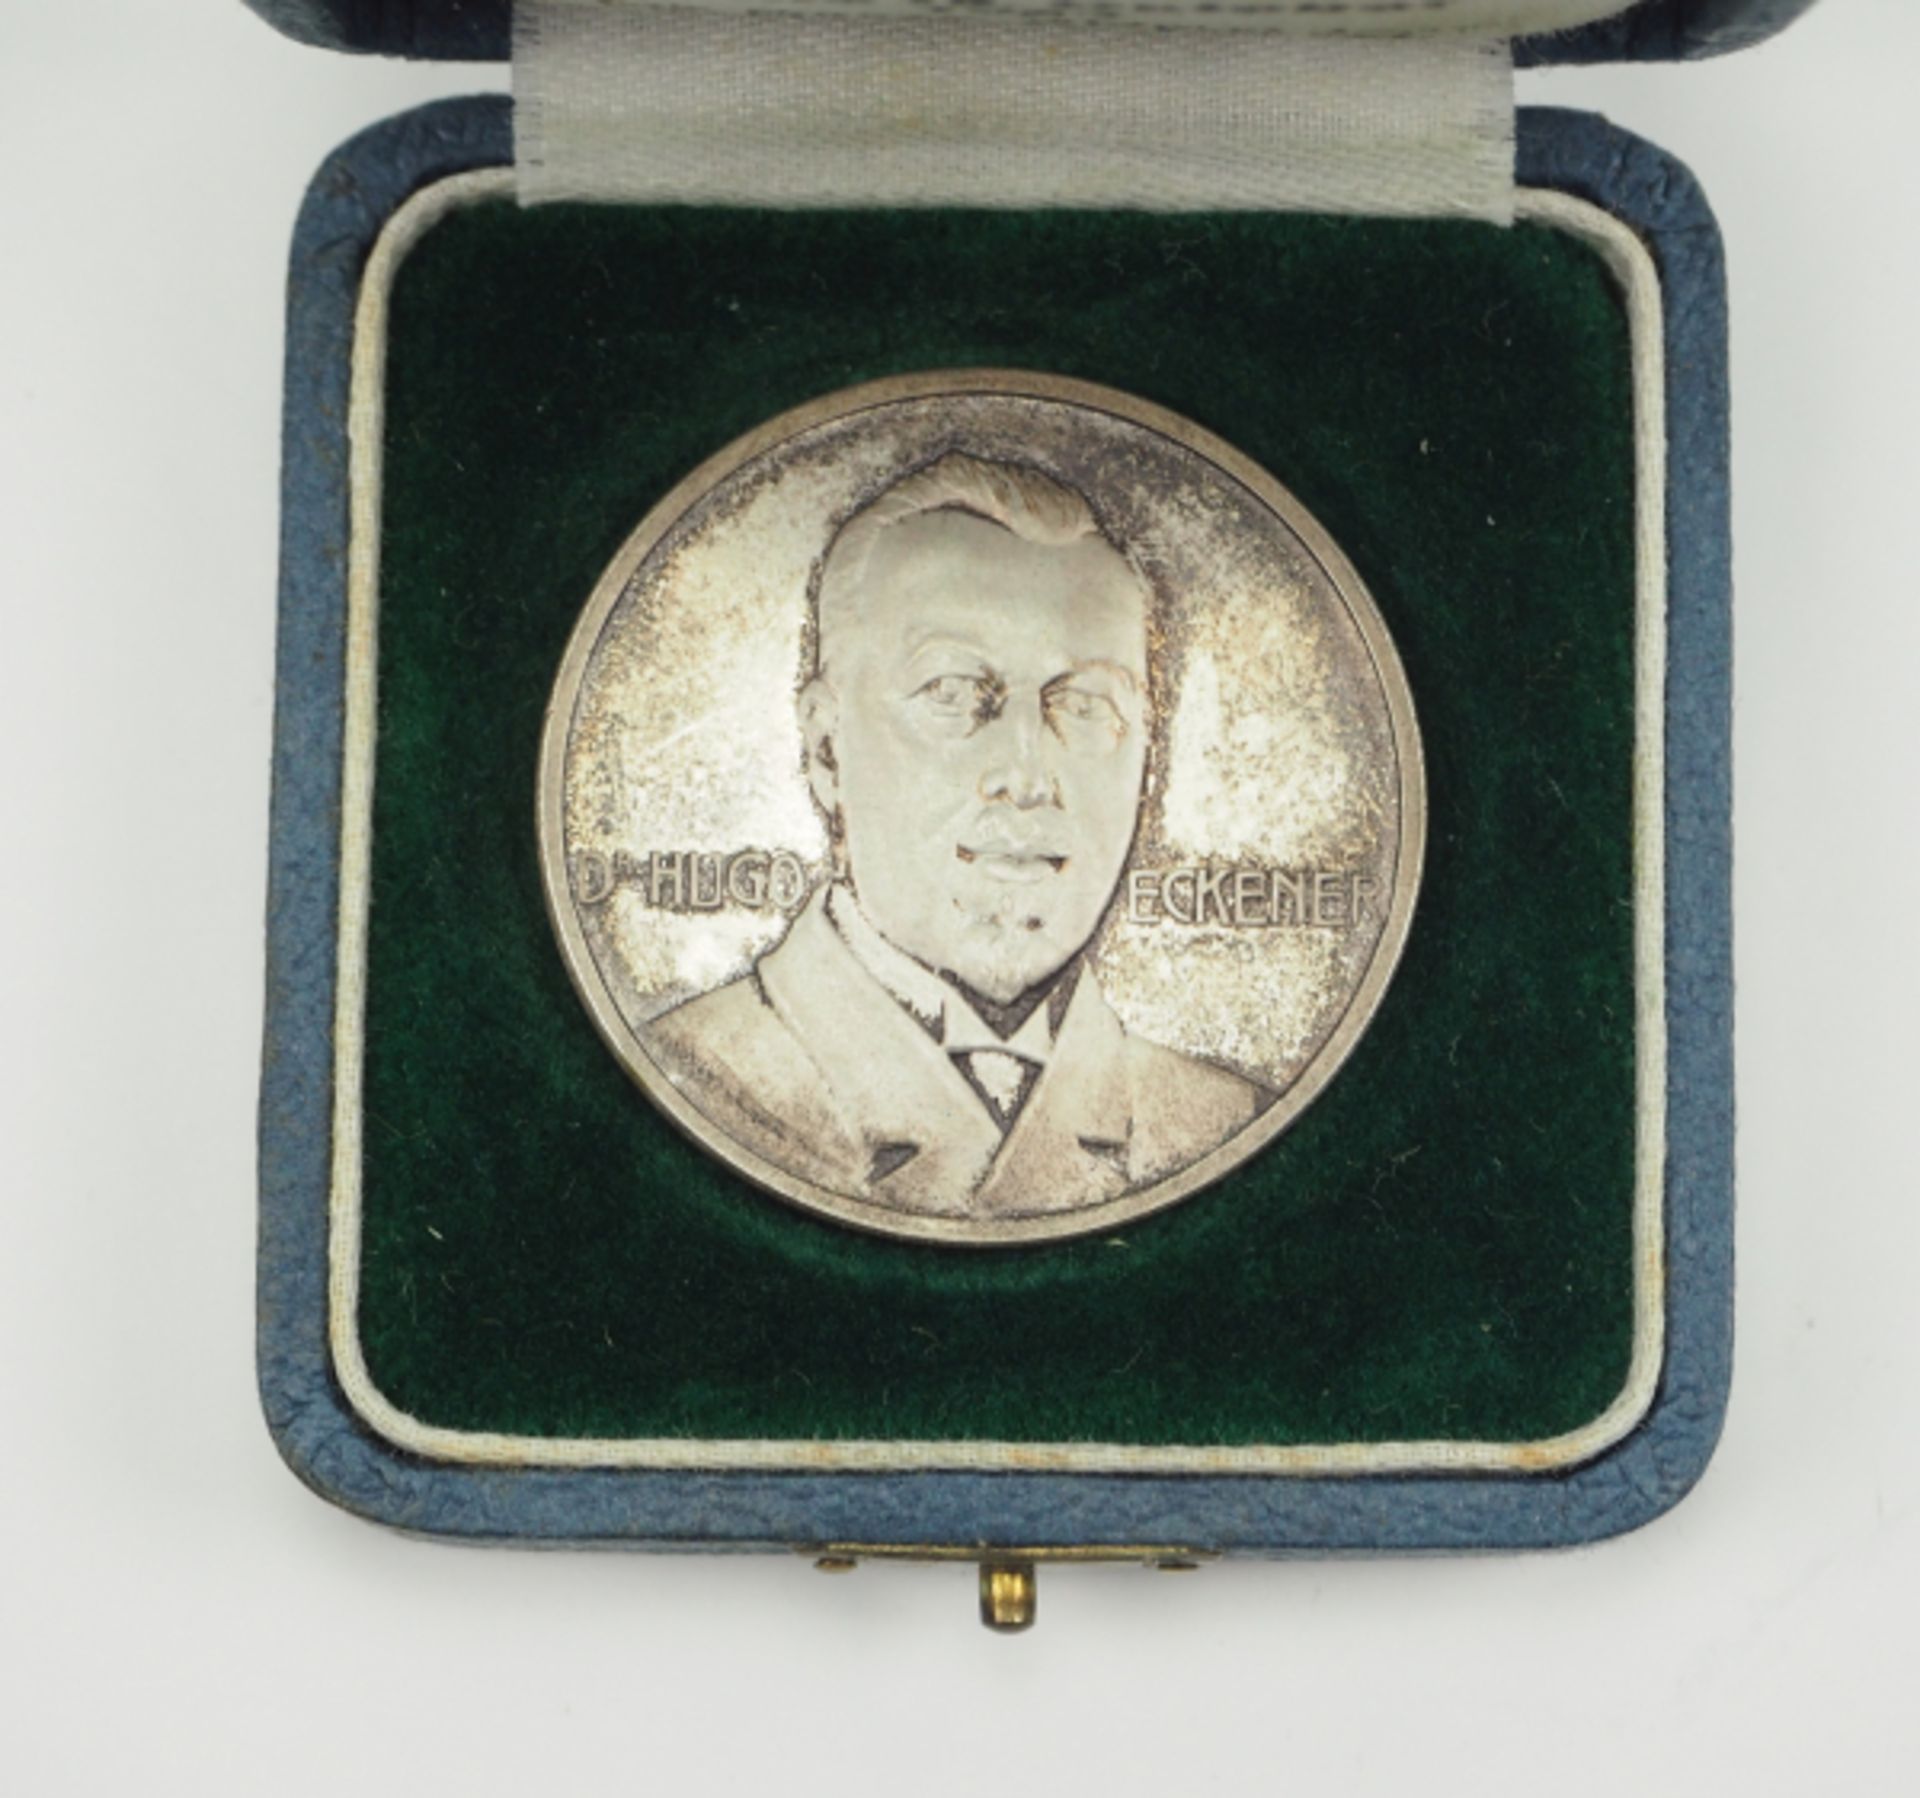 Zepplin: Silbermedaille auf dei Ozeanfahrt mit Dr. Eckener 1924, im Etui. - Bild 3 aus 3